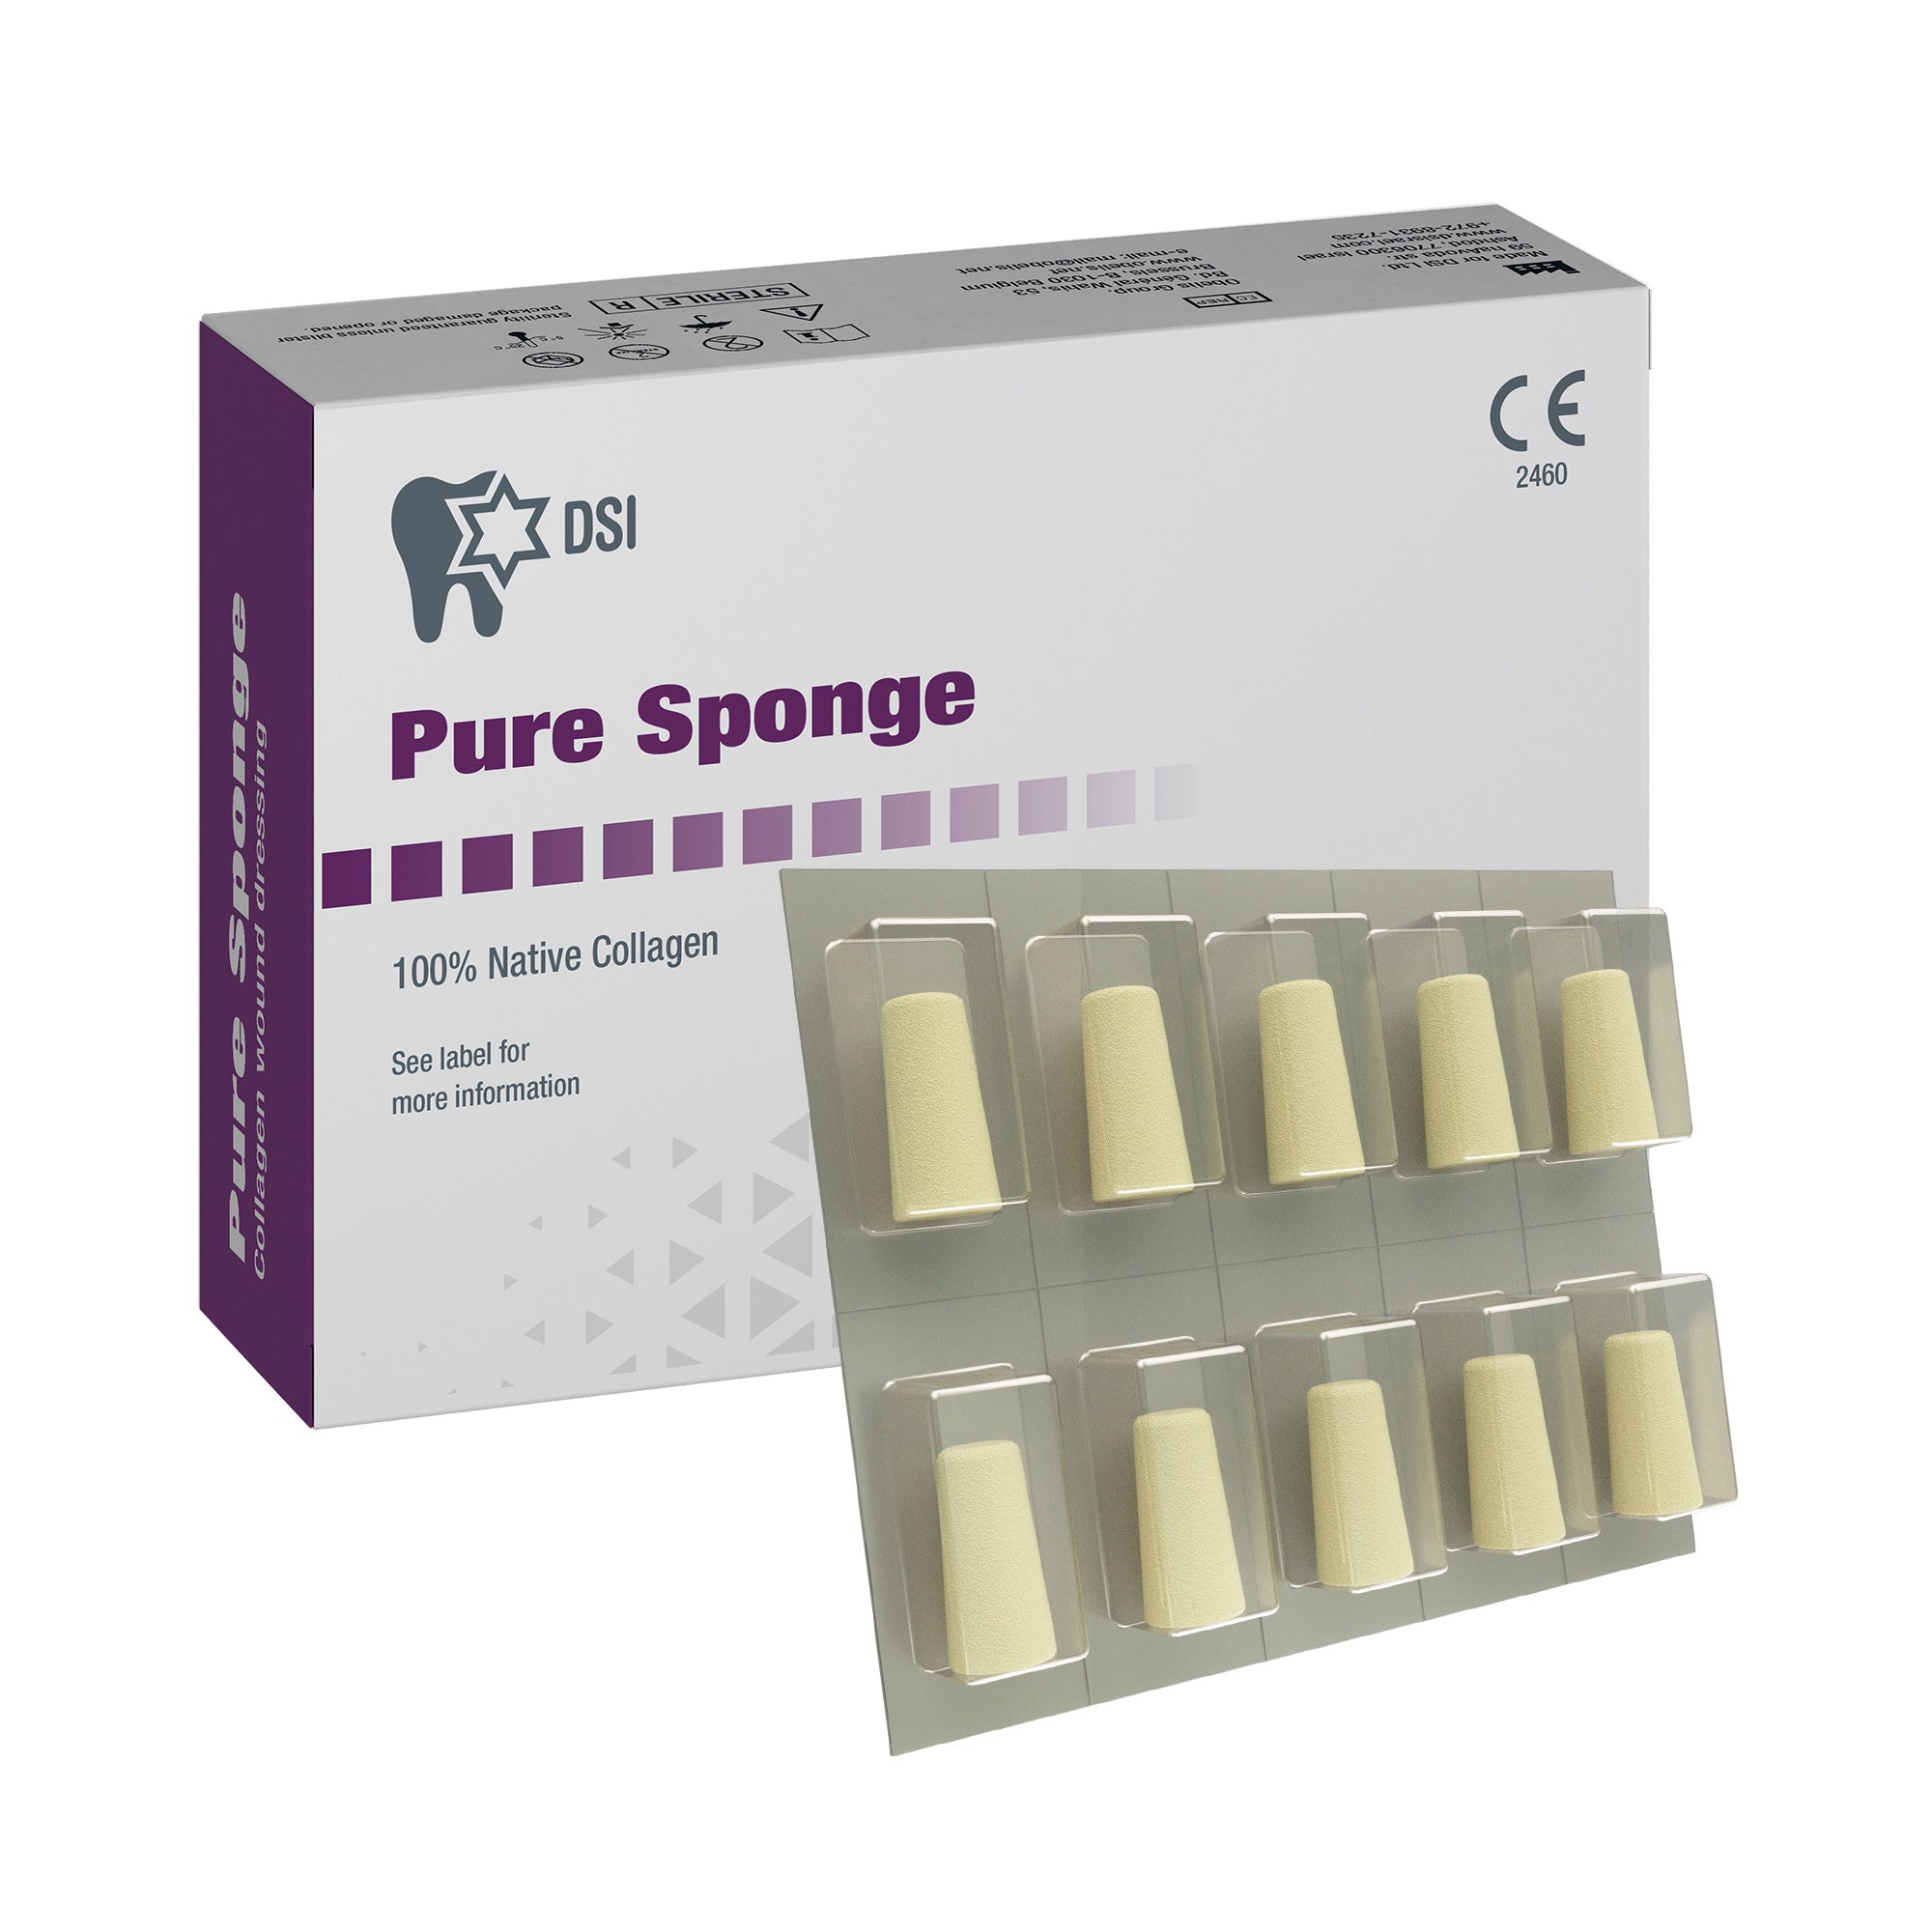 DSI Pure Sponge Sterile Collagen Plug In Blister